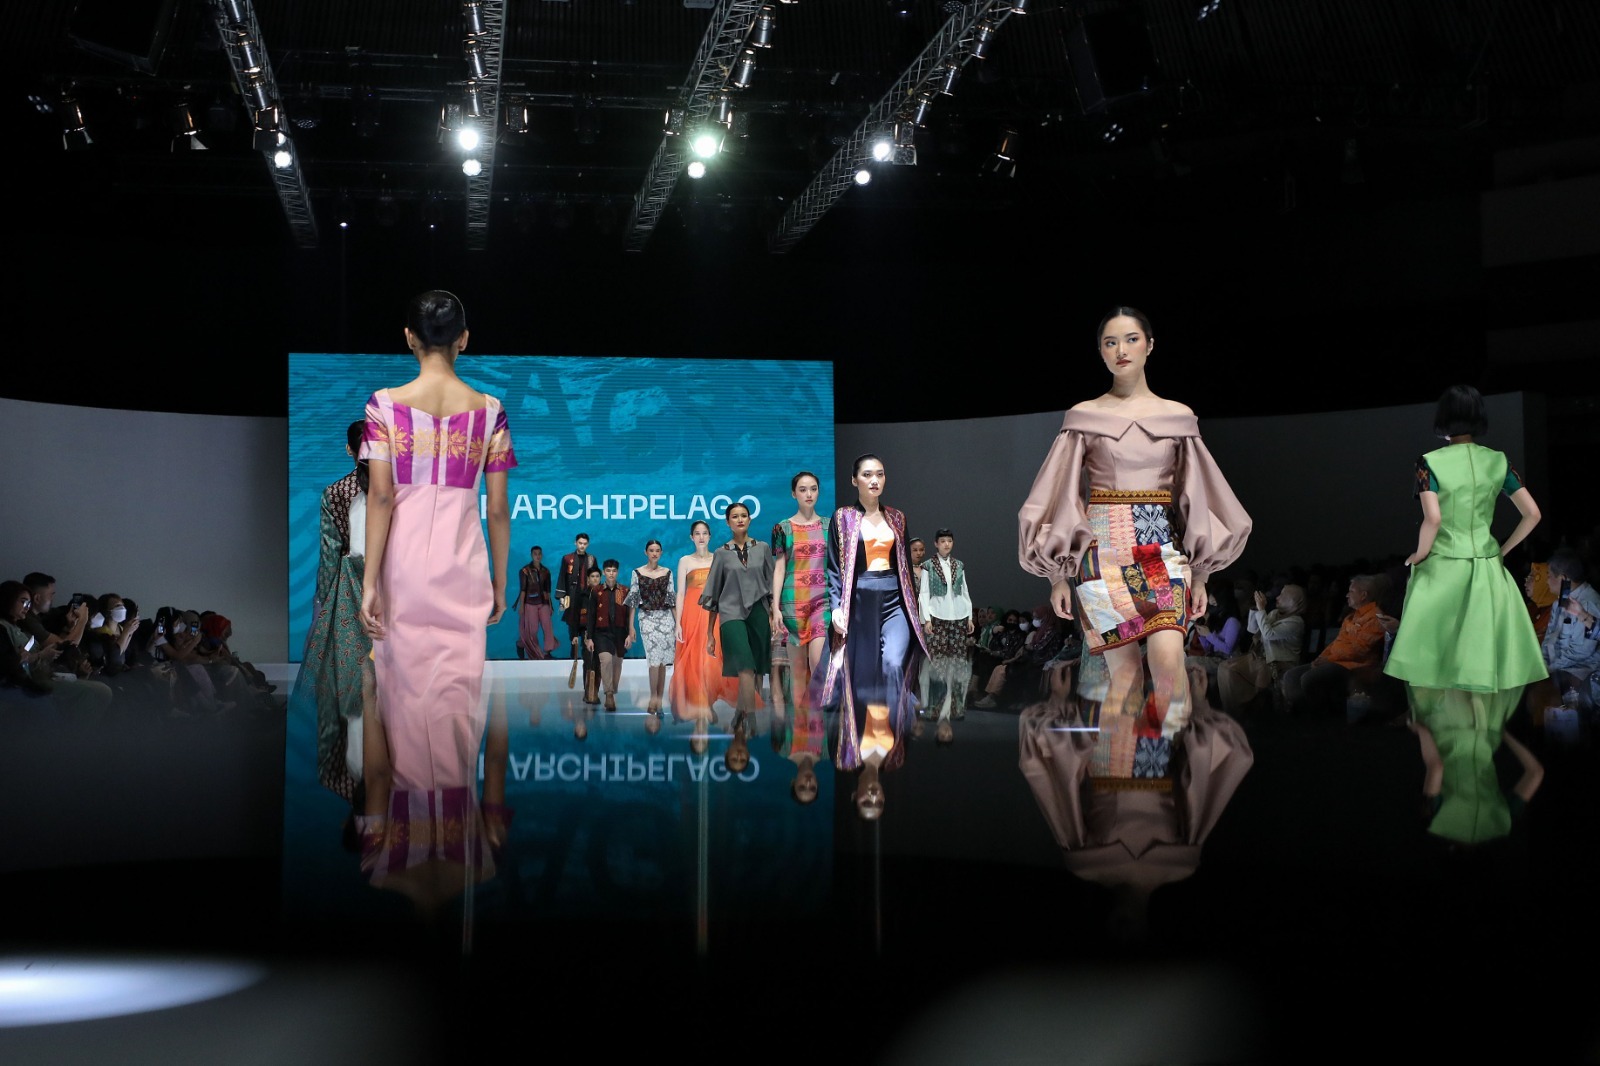 Model memperagakan busana dalam show Age of Archipelago saat berlangsungnya Indonesia Fashion Week (IFW) 2023 di Jakarta Convention Center, Jakarta, Jumat (24/2/2023). (Sumber gambar: JIBI/Bisnis/Eusebio Chrysnamurti)